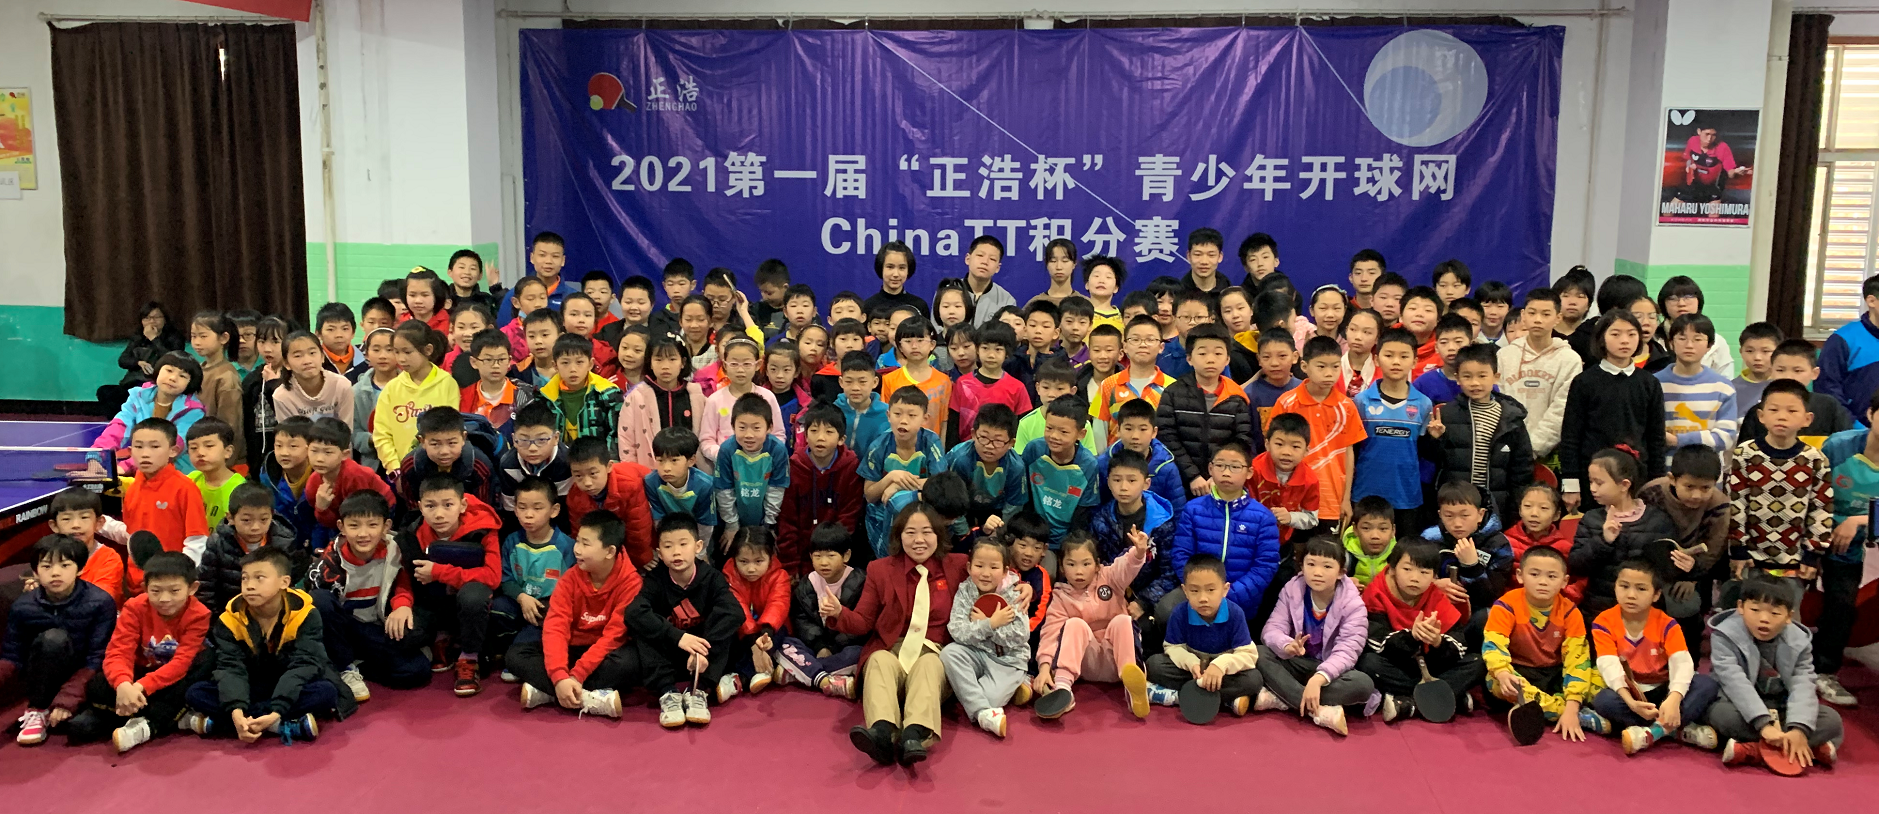 2021年第三届“正浩.金冠杯”青少年开球网ChinaTT积分赛乙组